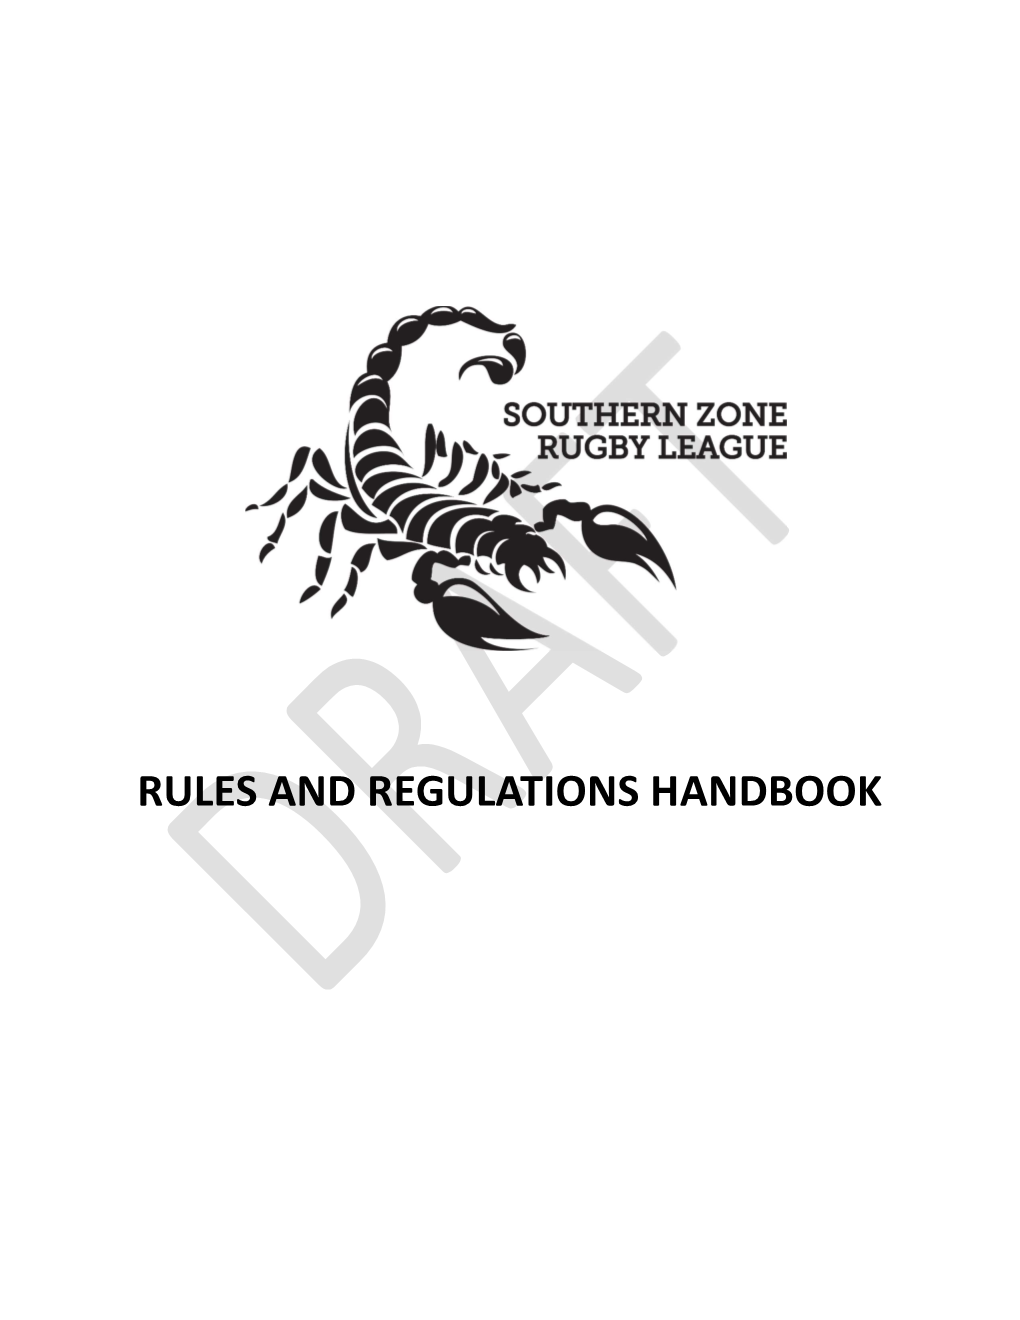 Rules and Regulations Handbook